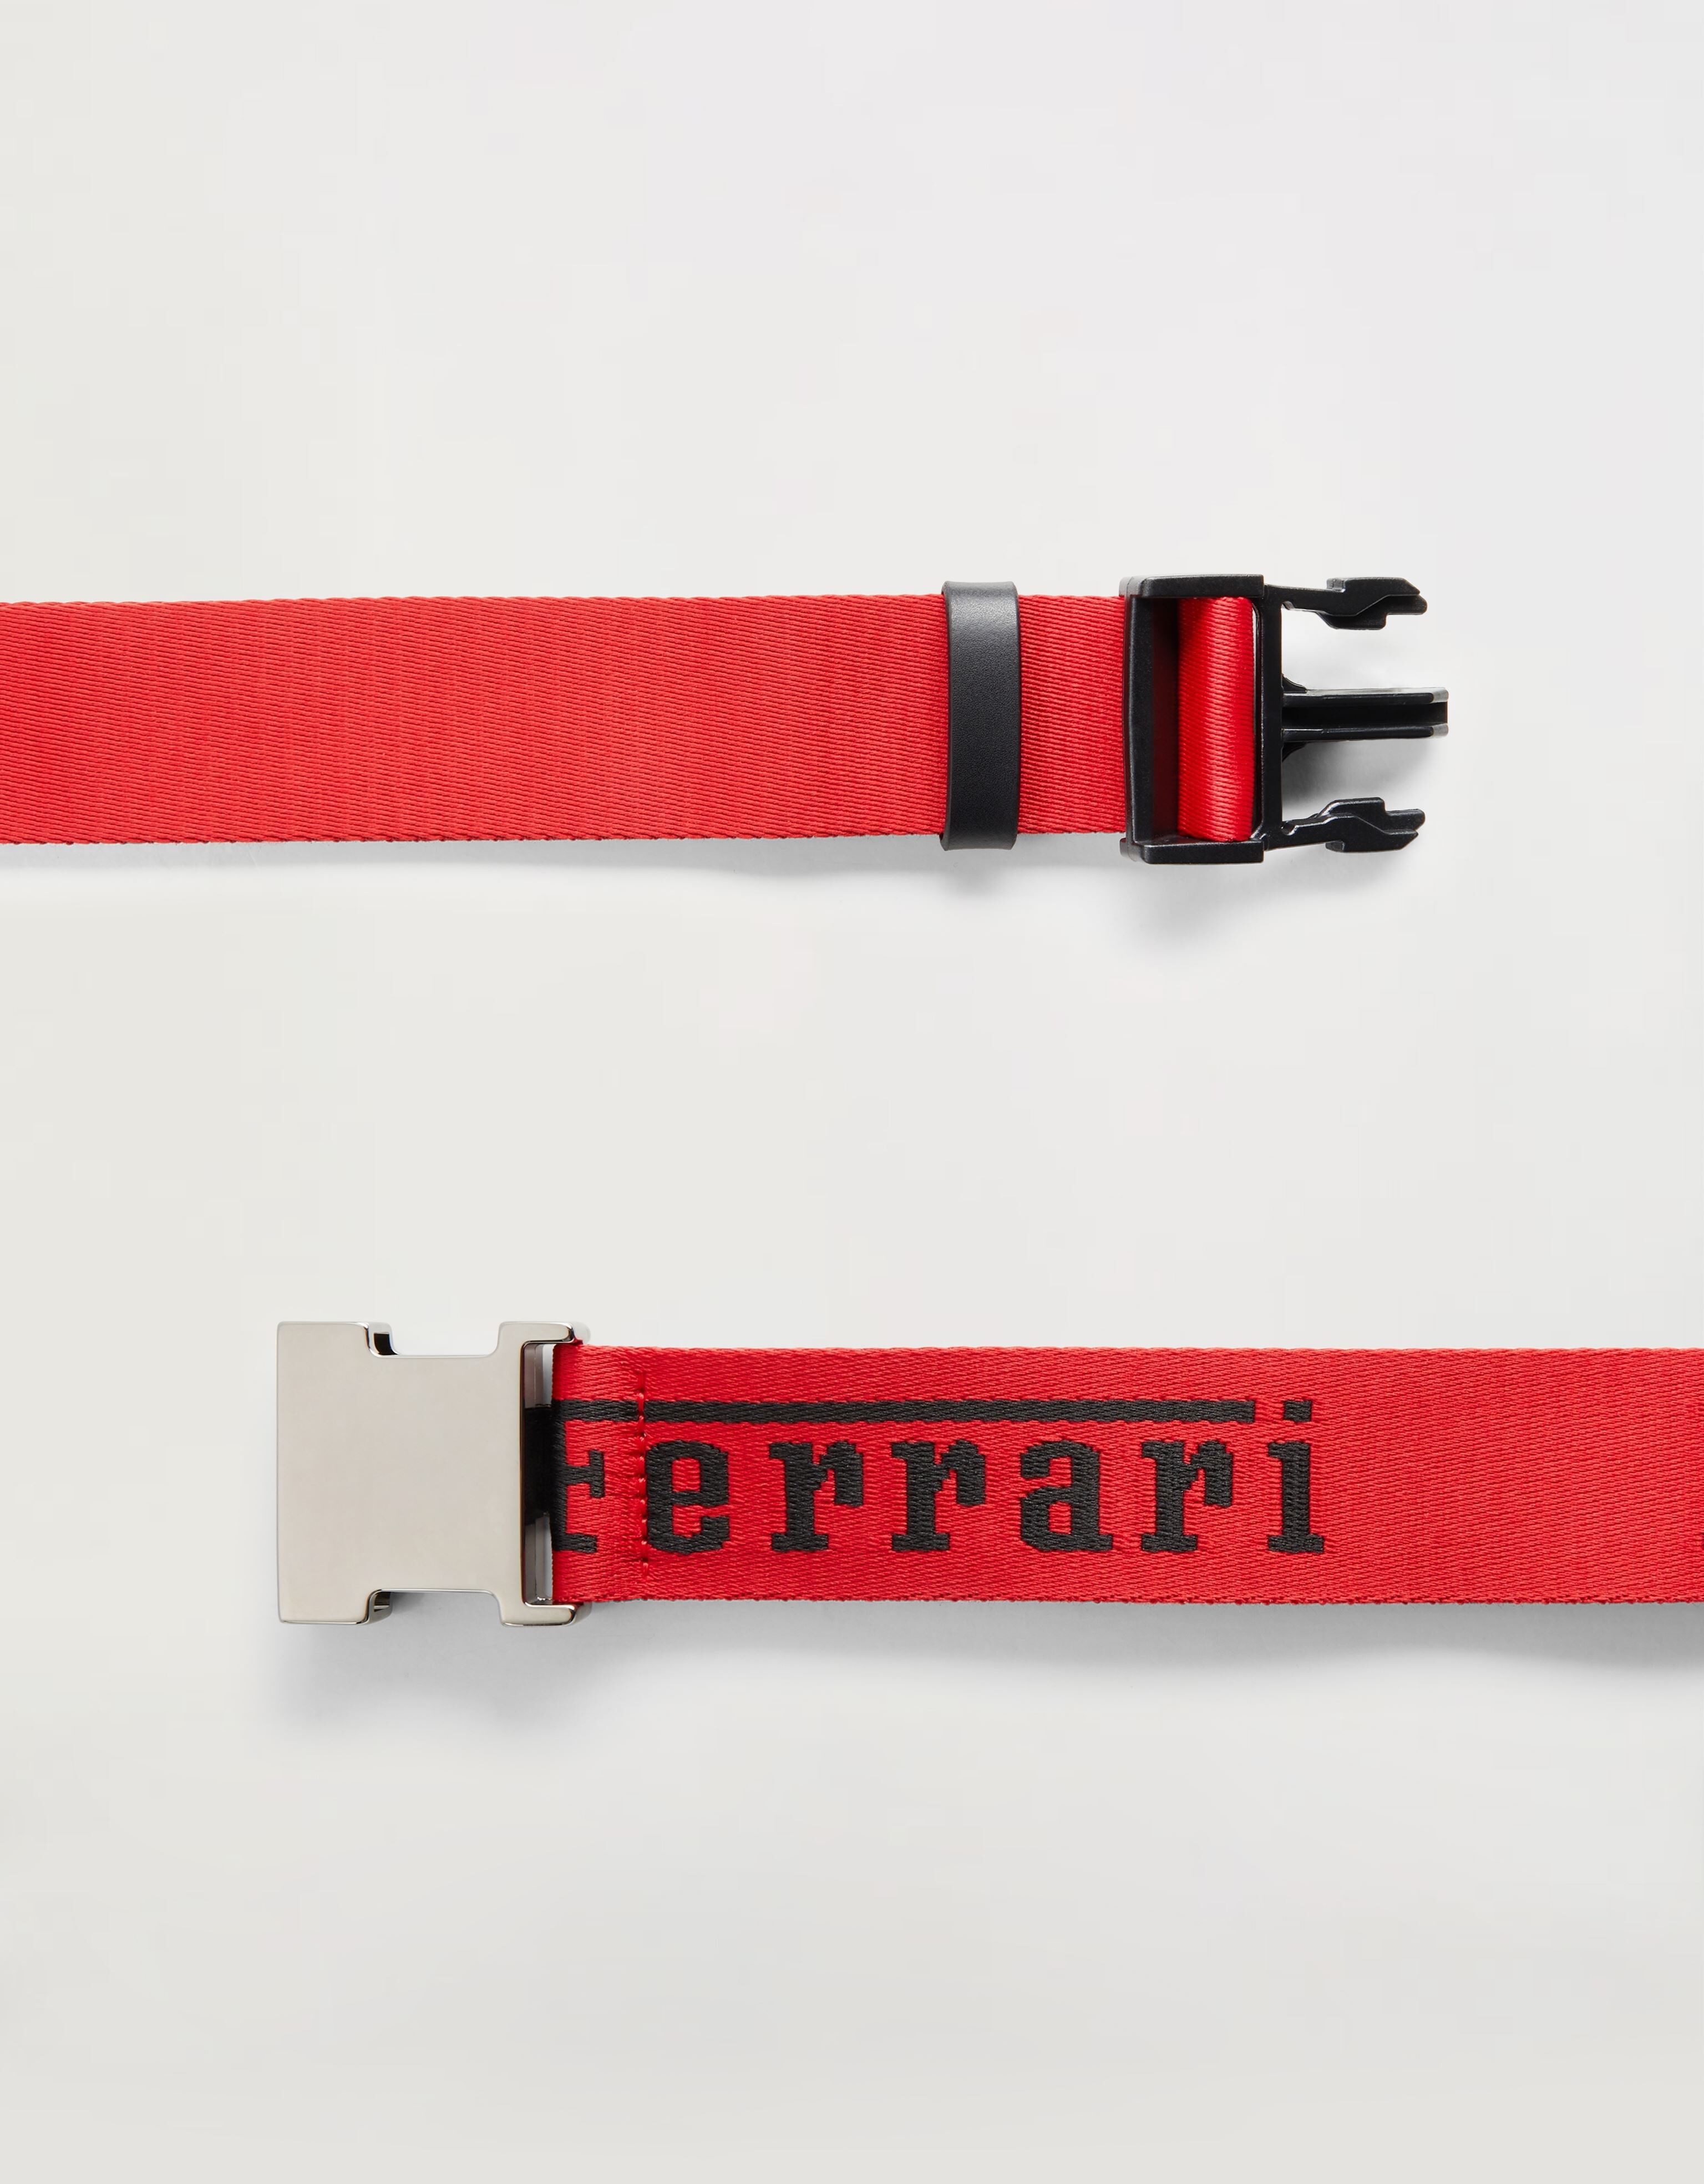 Ferrari テープベルト Ferrariロゴ入り Rosso Corsa 20017f